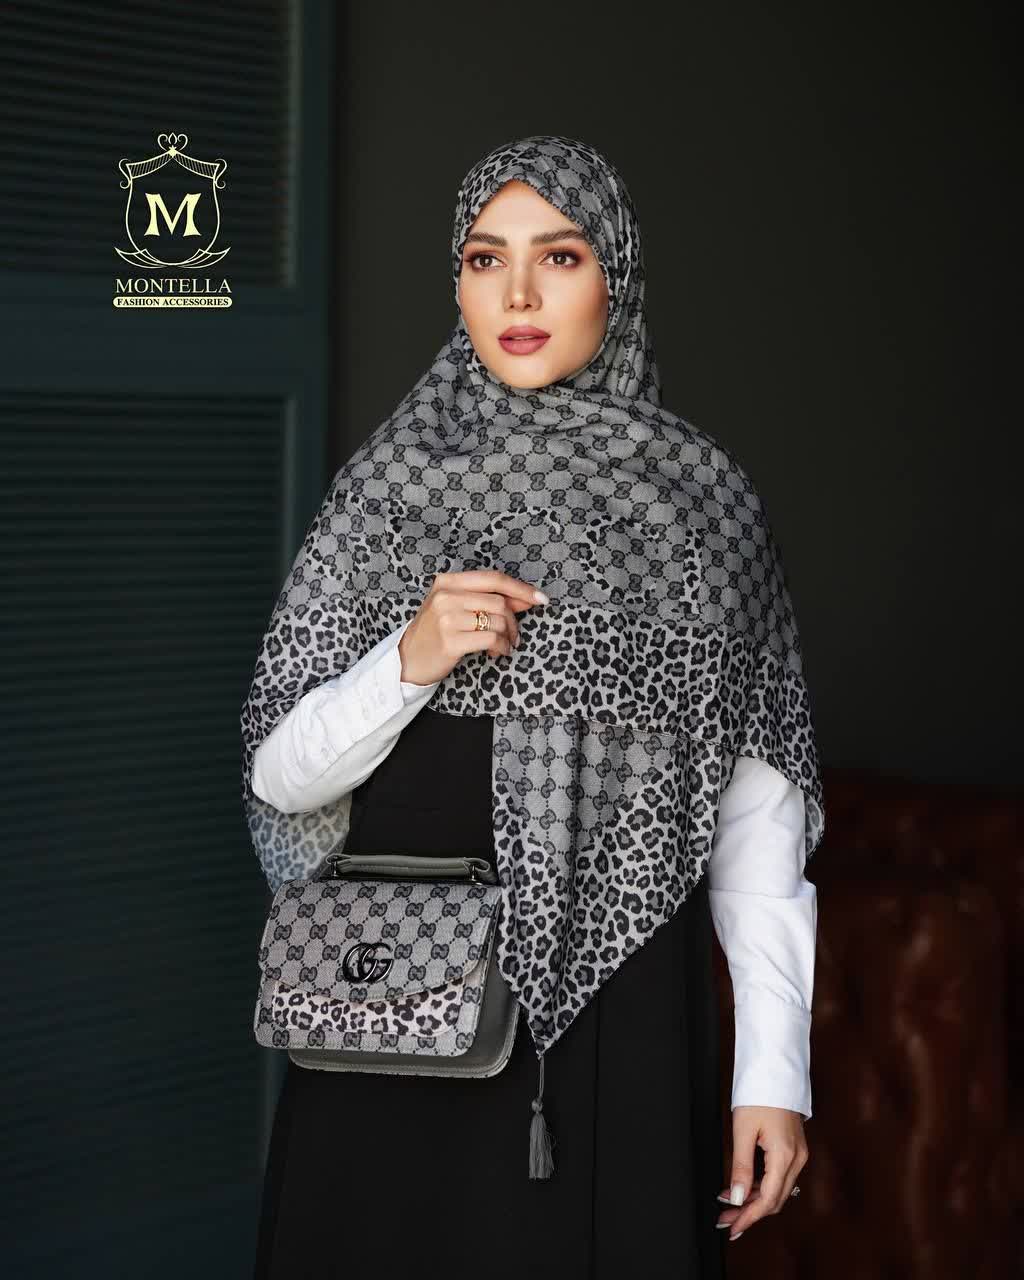 ست کیف و روسری زنانه طرح گوچی ببری رنگ طوسی با کیف دسته چرمی کیفیت عالی با ارسال رایگان کد mo502